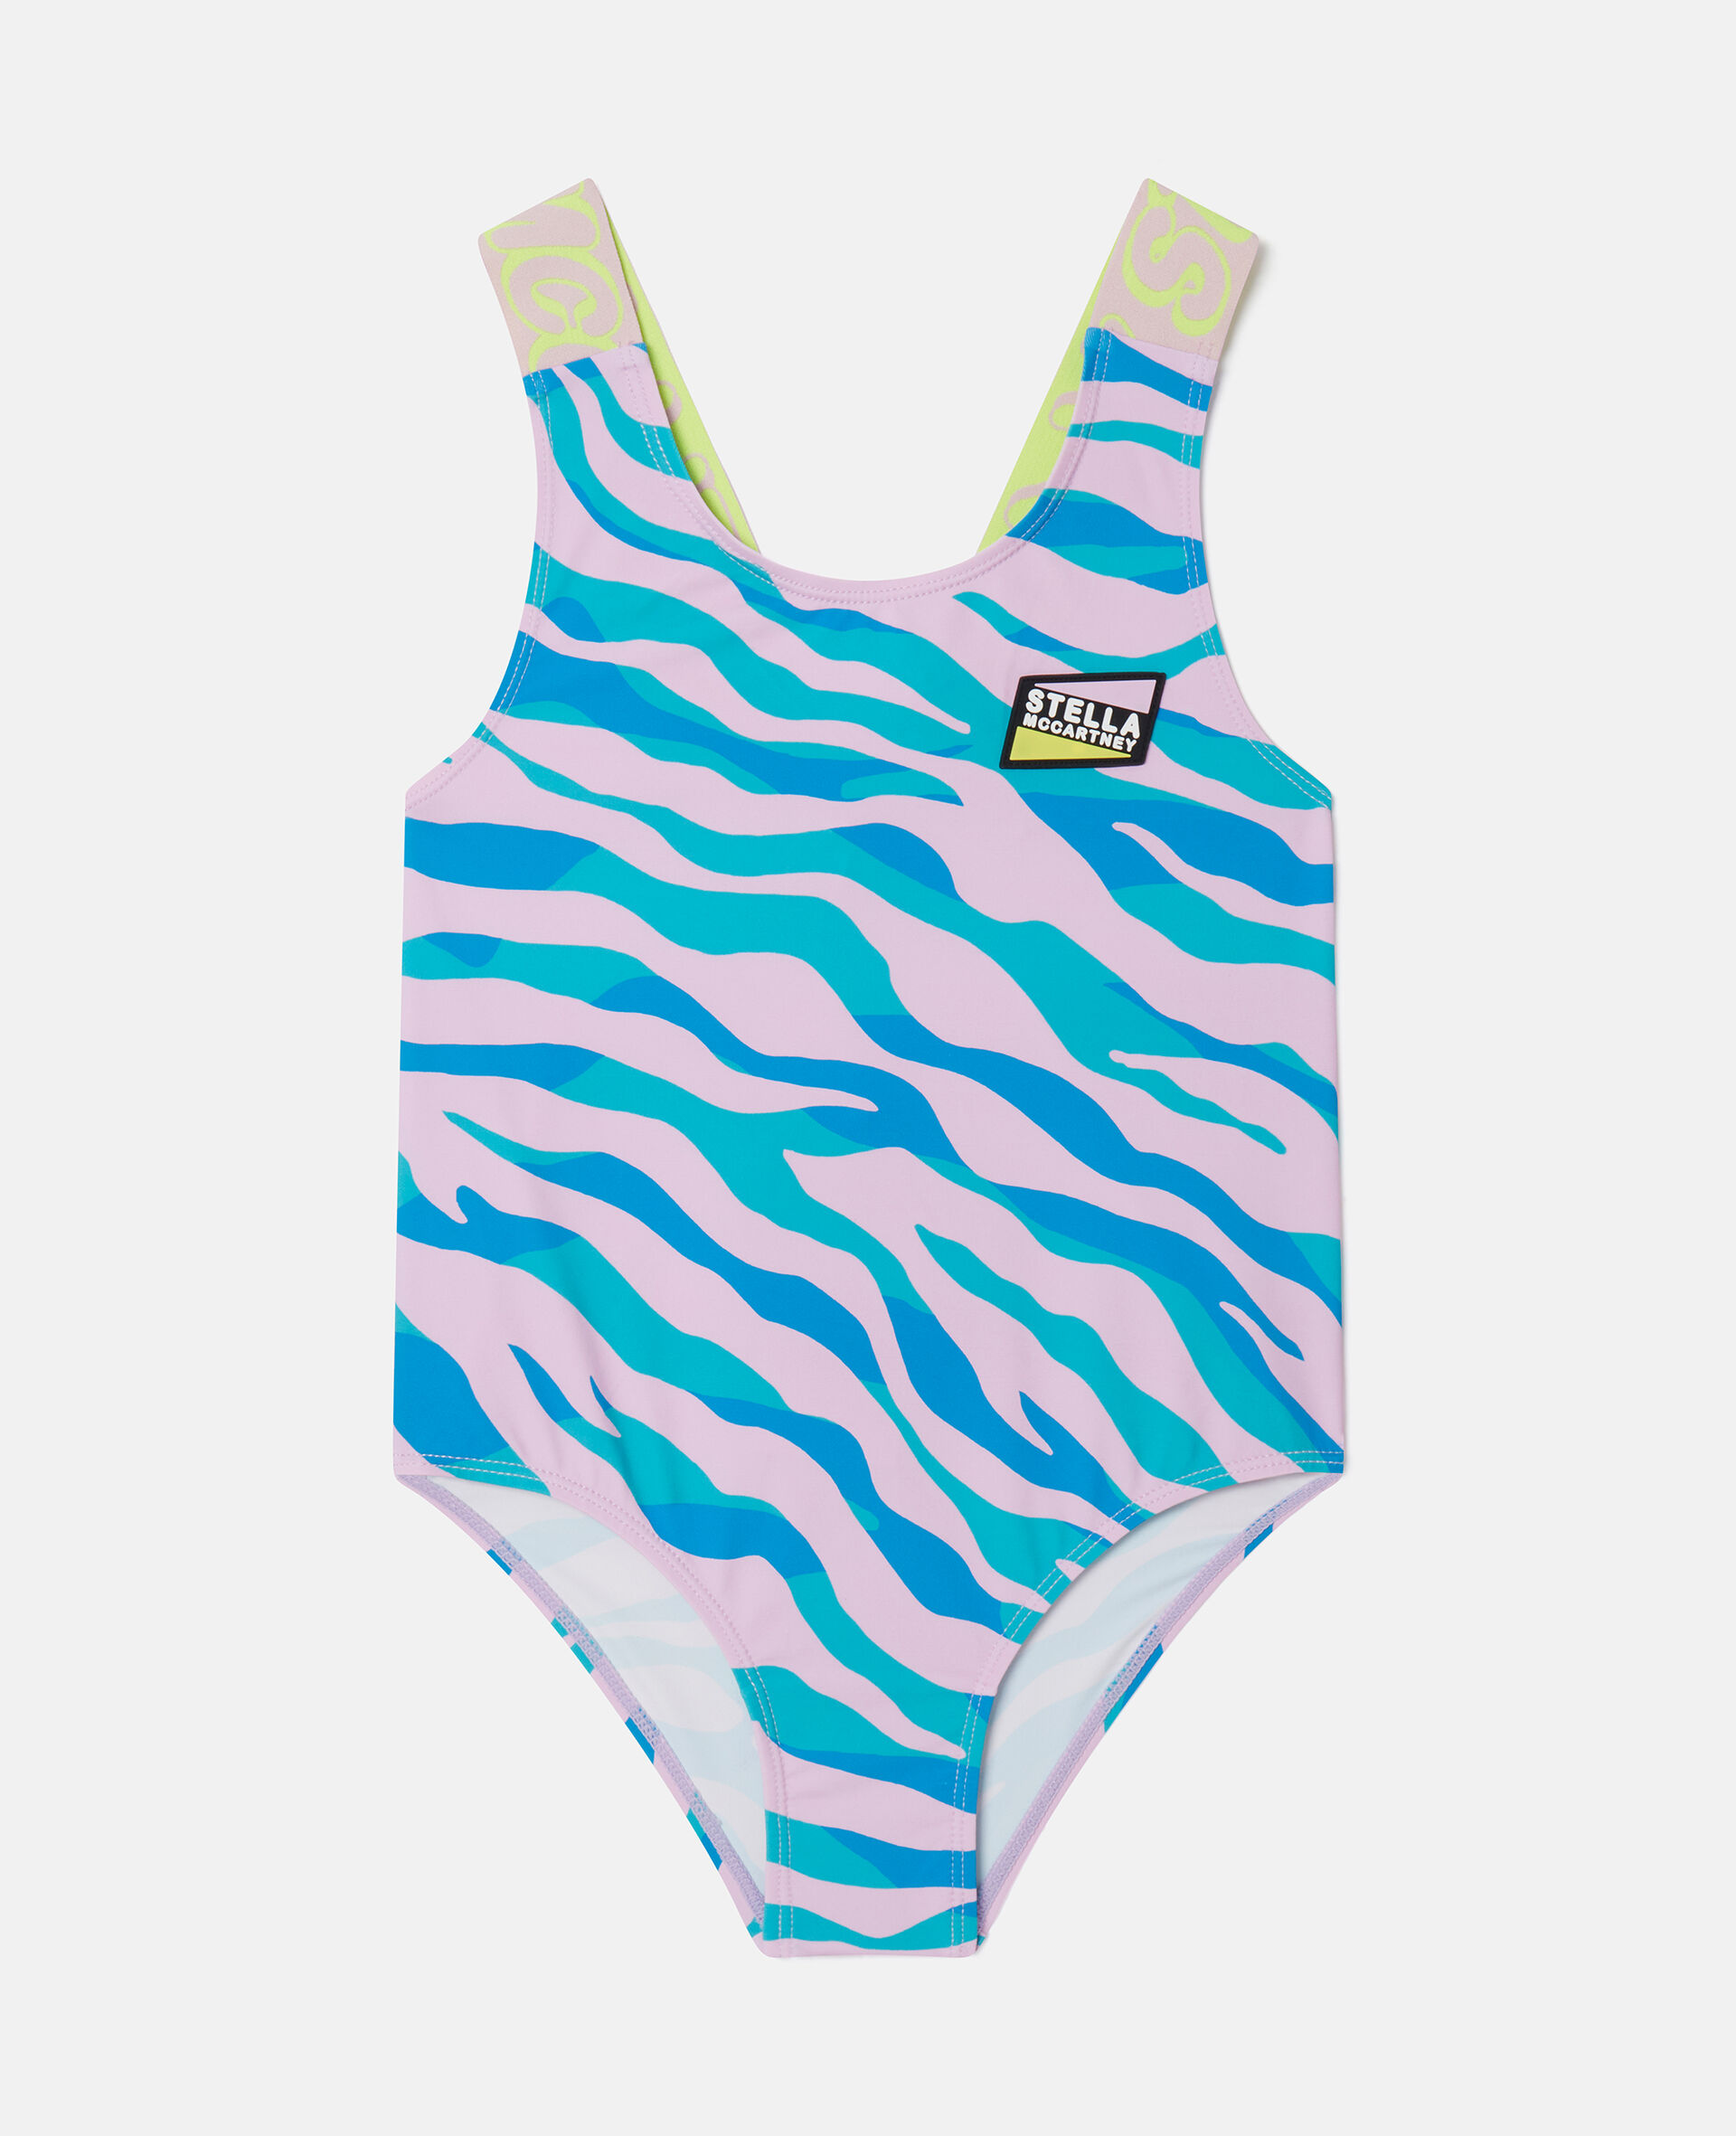 Zebra Print Swimsuit-Multicolored-medium